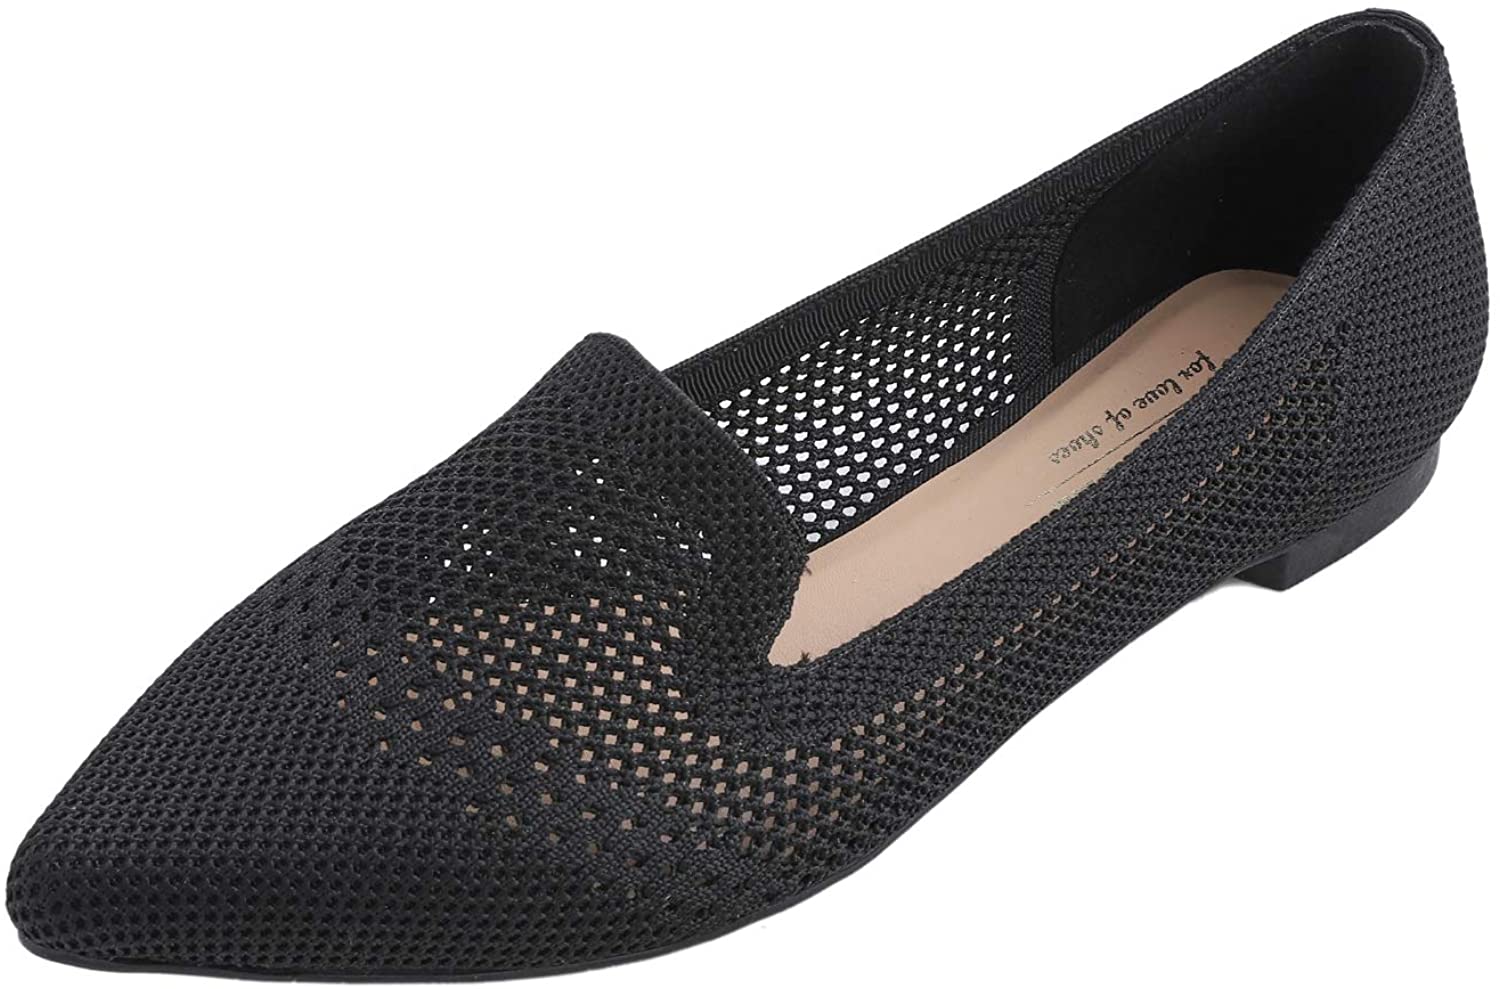 Bout Pointu Chaussures Plates en Maille Respirante à la Mode pour Femmes Feversole Women's Woven Fashion Breathable Pointed Knit Flat Shoes